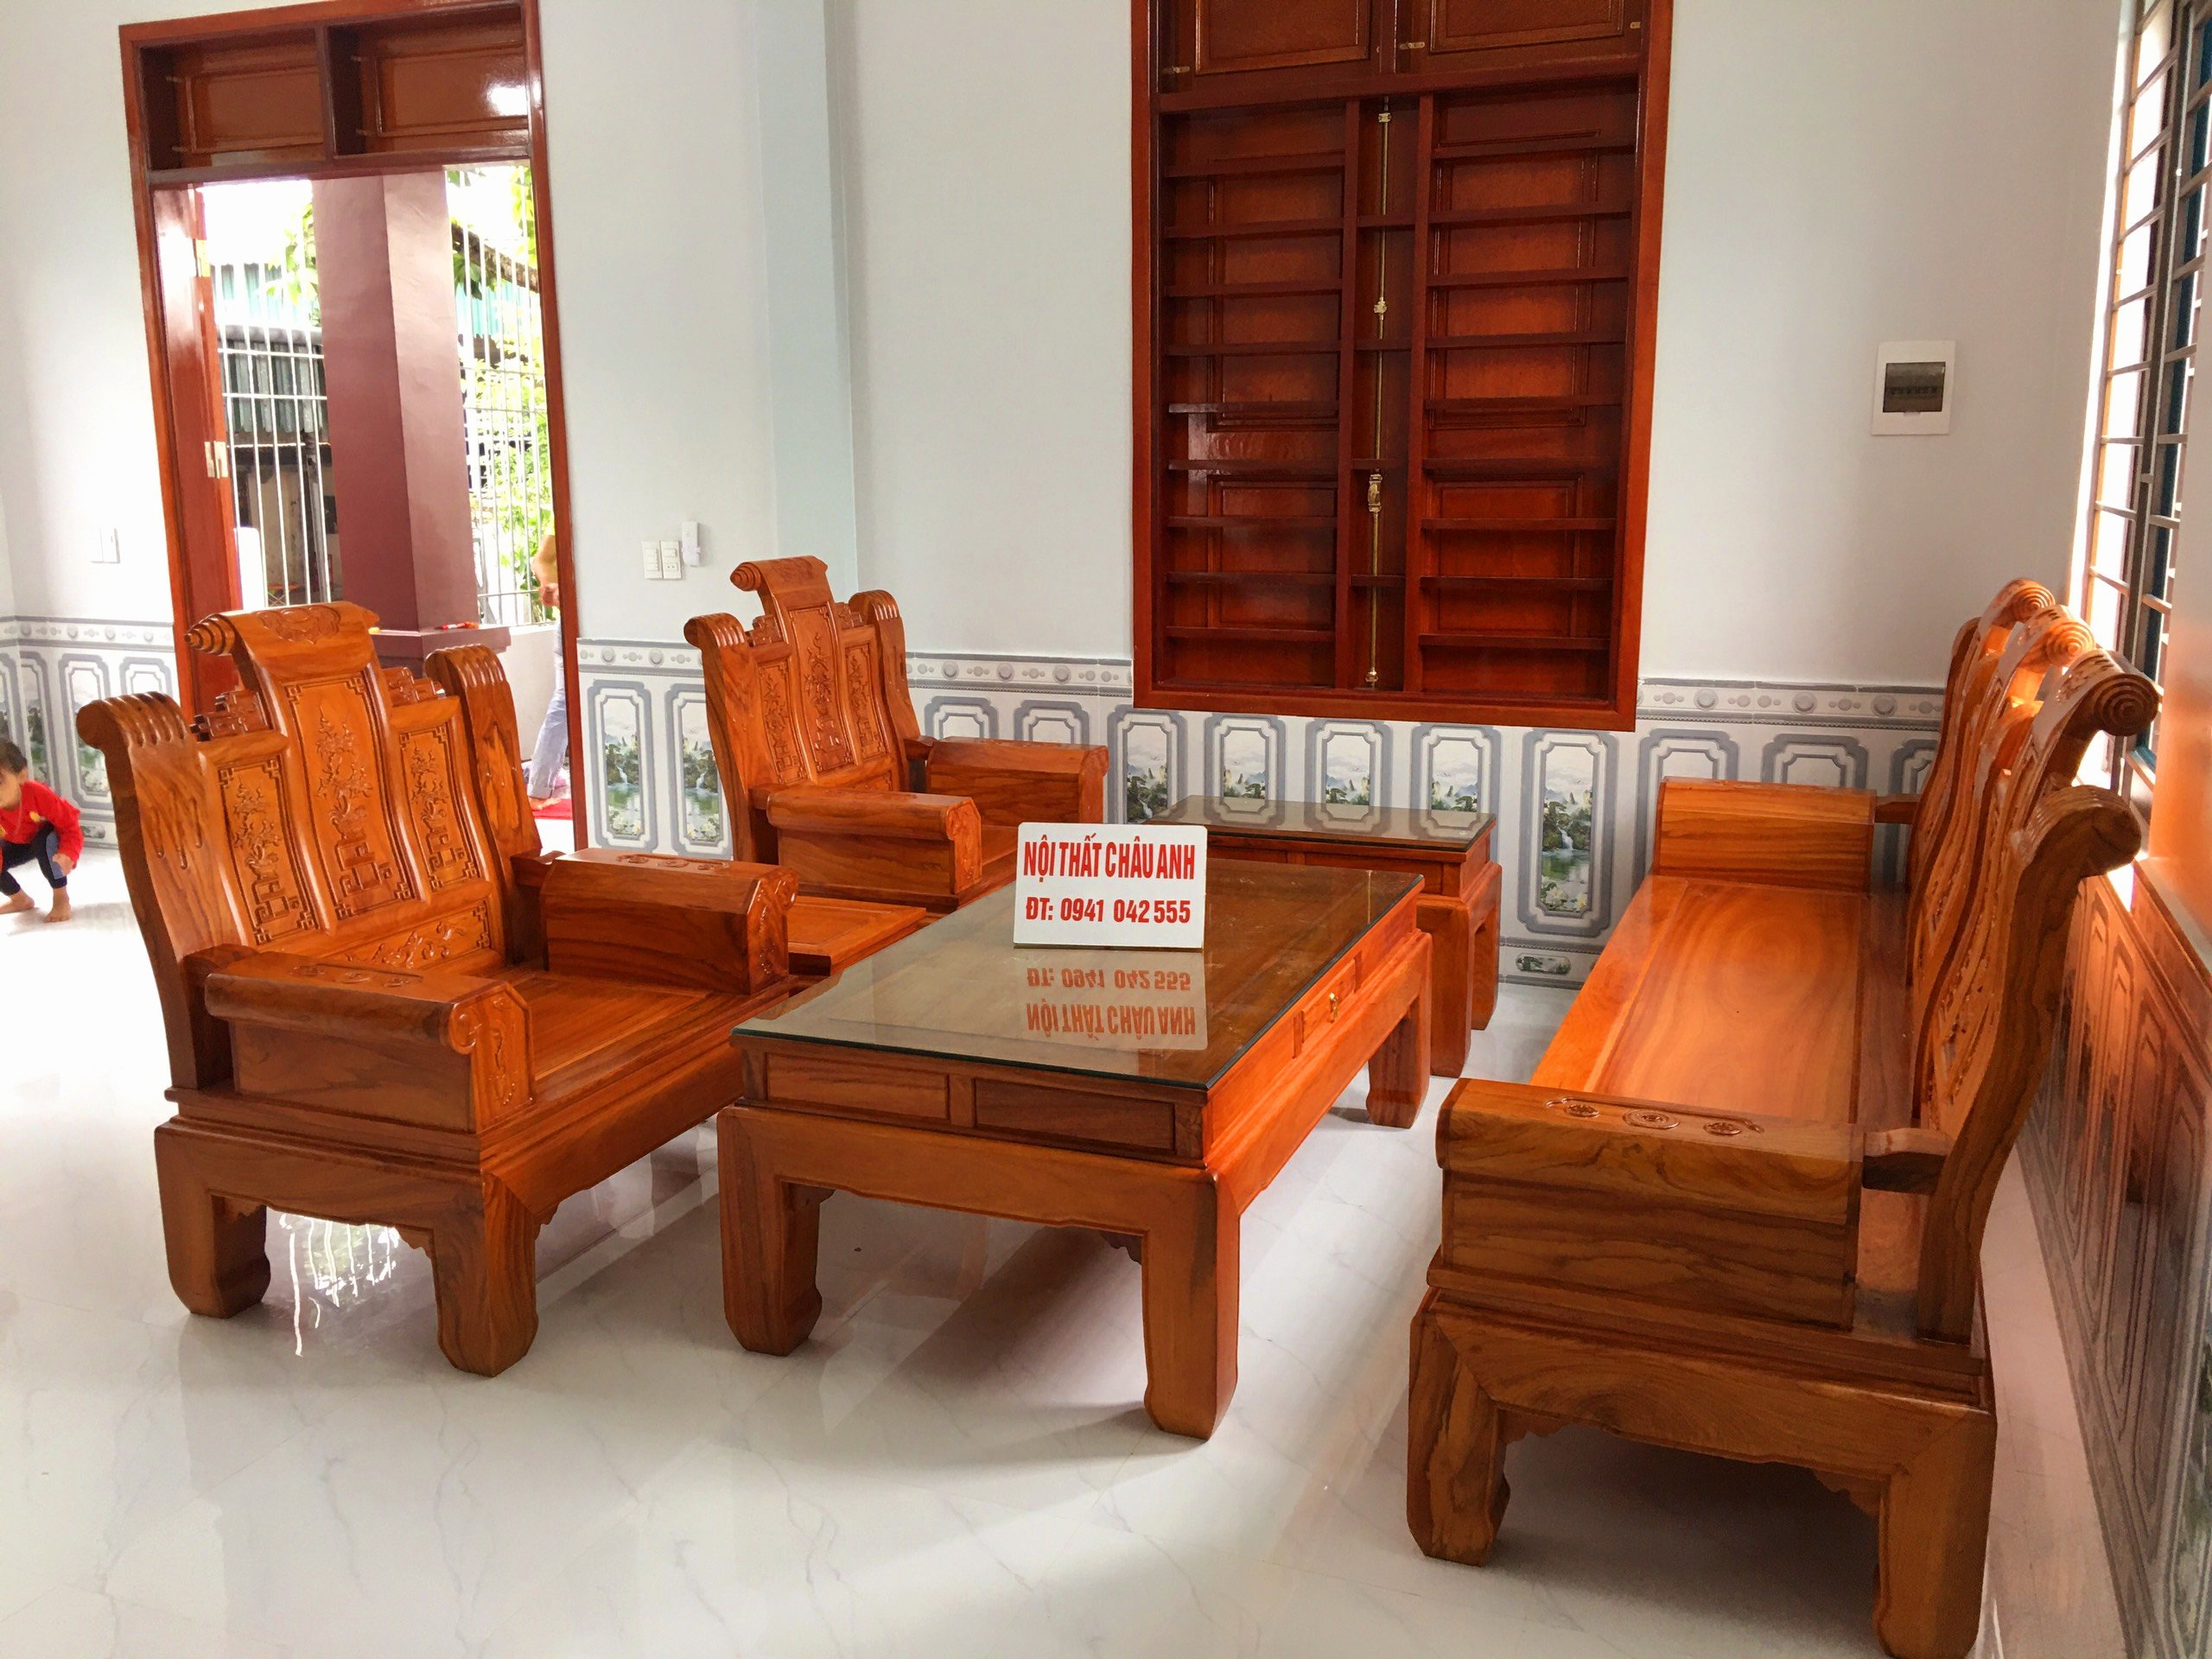 Bộ bàn ghế phòng khách gỗ gõ đỏ: Sự kết hợp giữa vẻ đẹp cổ điển và hiện đại, bộ bàn ghế phòng khách gỗ gõ đỏ sẽ là lựa chọn hoàn hảo cho không gian nội thất của bạn. Được chế tác bằng tay từ gỗ gõ đỏ, sản phẩm toát lên vẻ đẹp sang trọng, đẳng cấp không thể bỏ qua. Hãy cùng xem hình ảnh để khám phá vẻ đẹp của sản phẩm này.